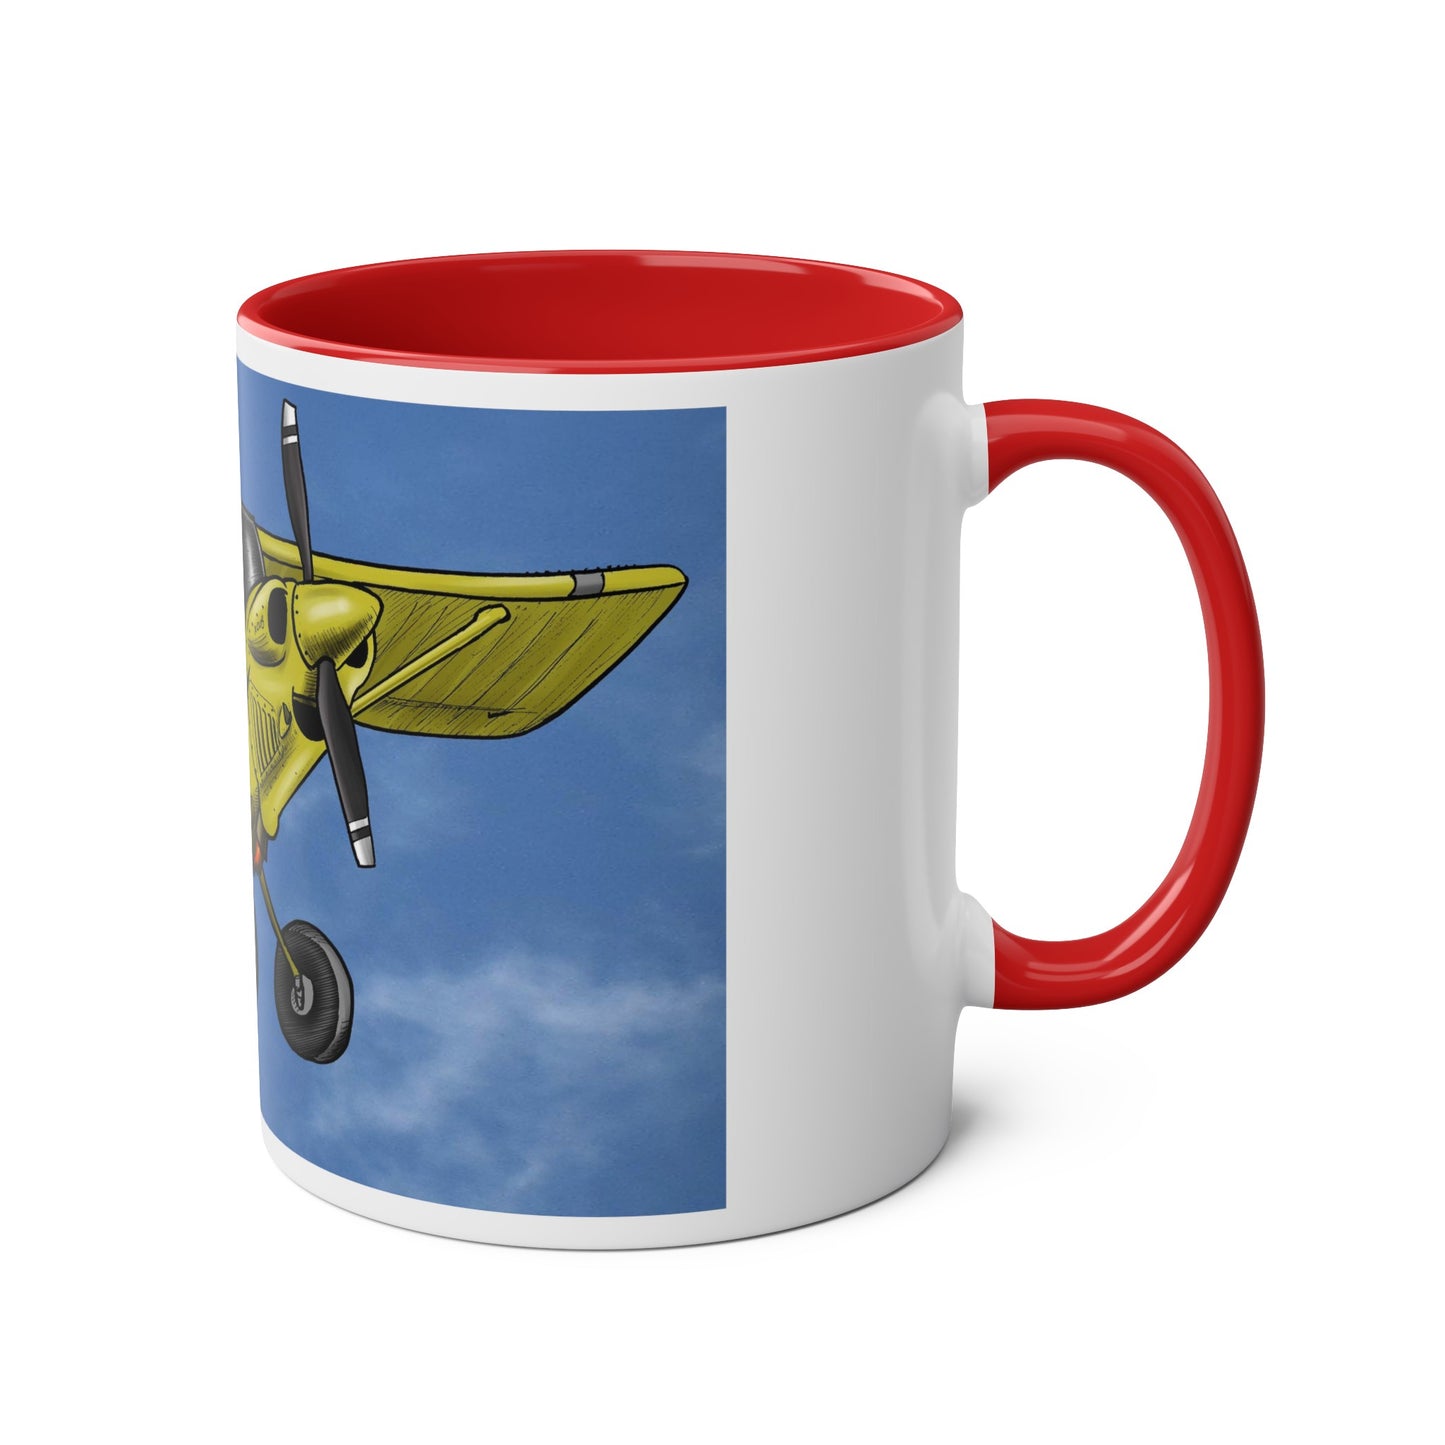 Super Yellow Cub Two-Tone Coffee Mugs, 11oz